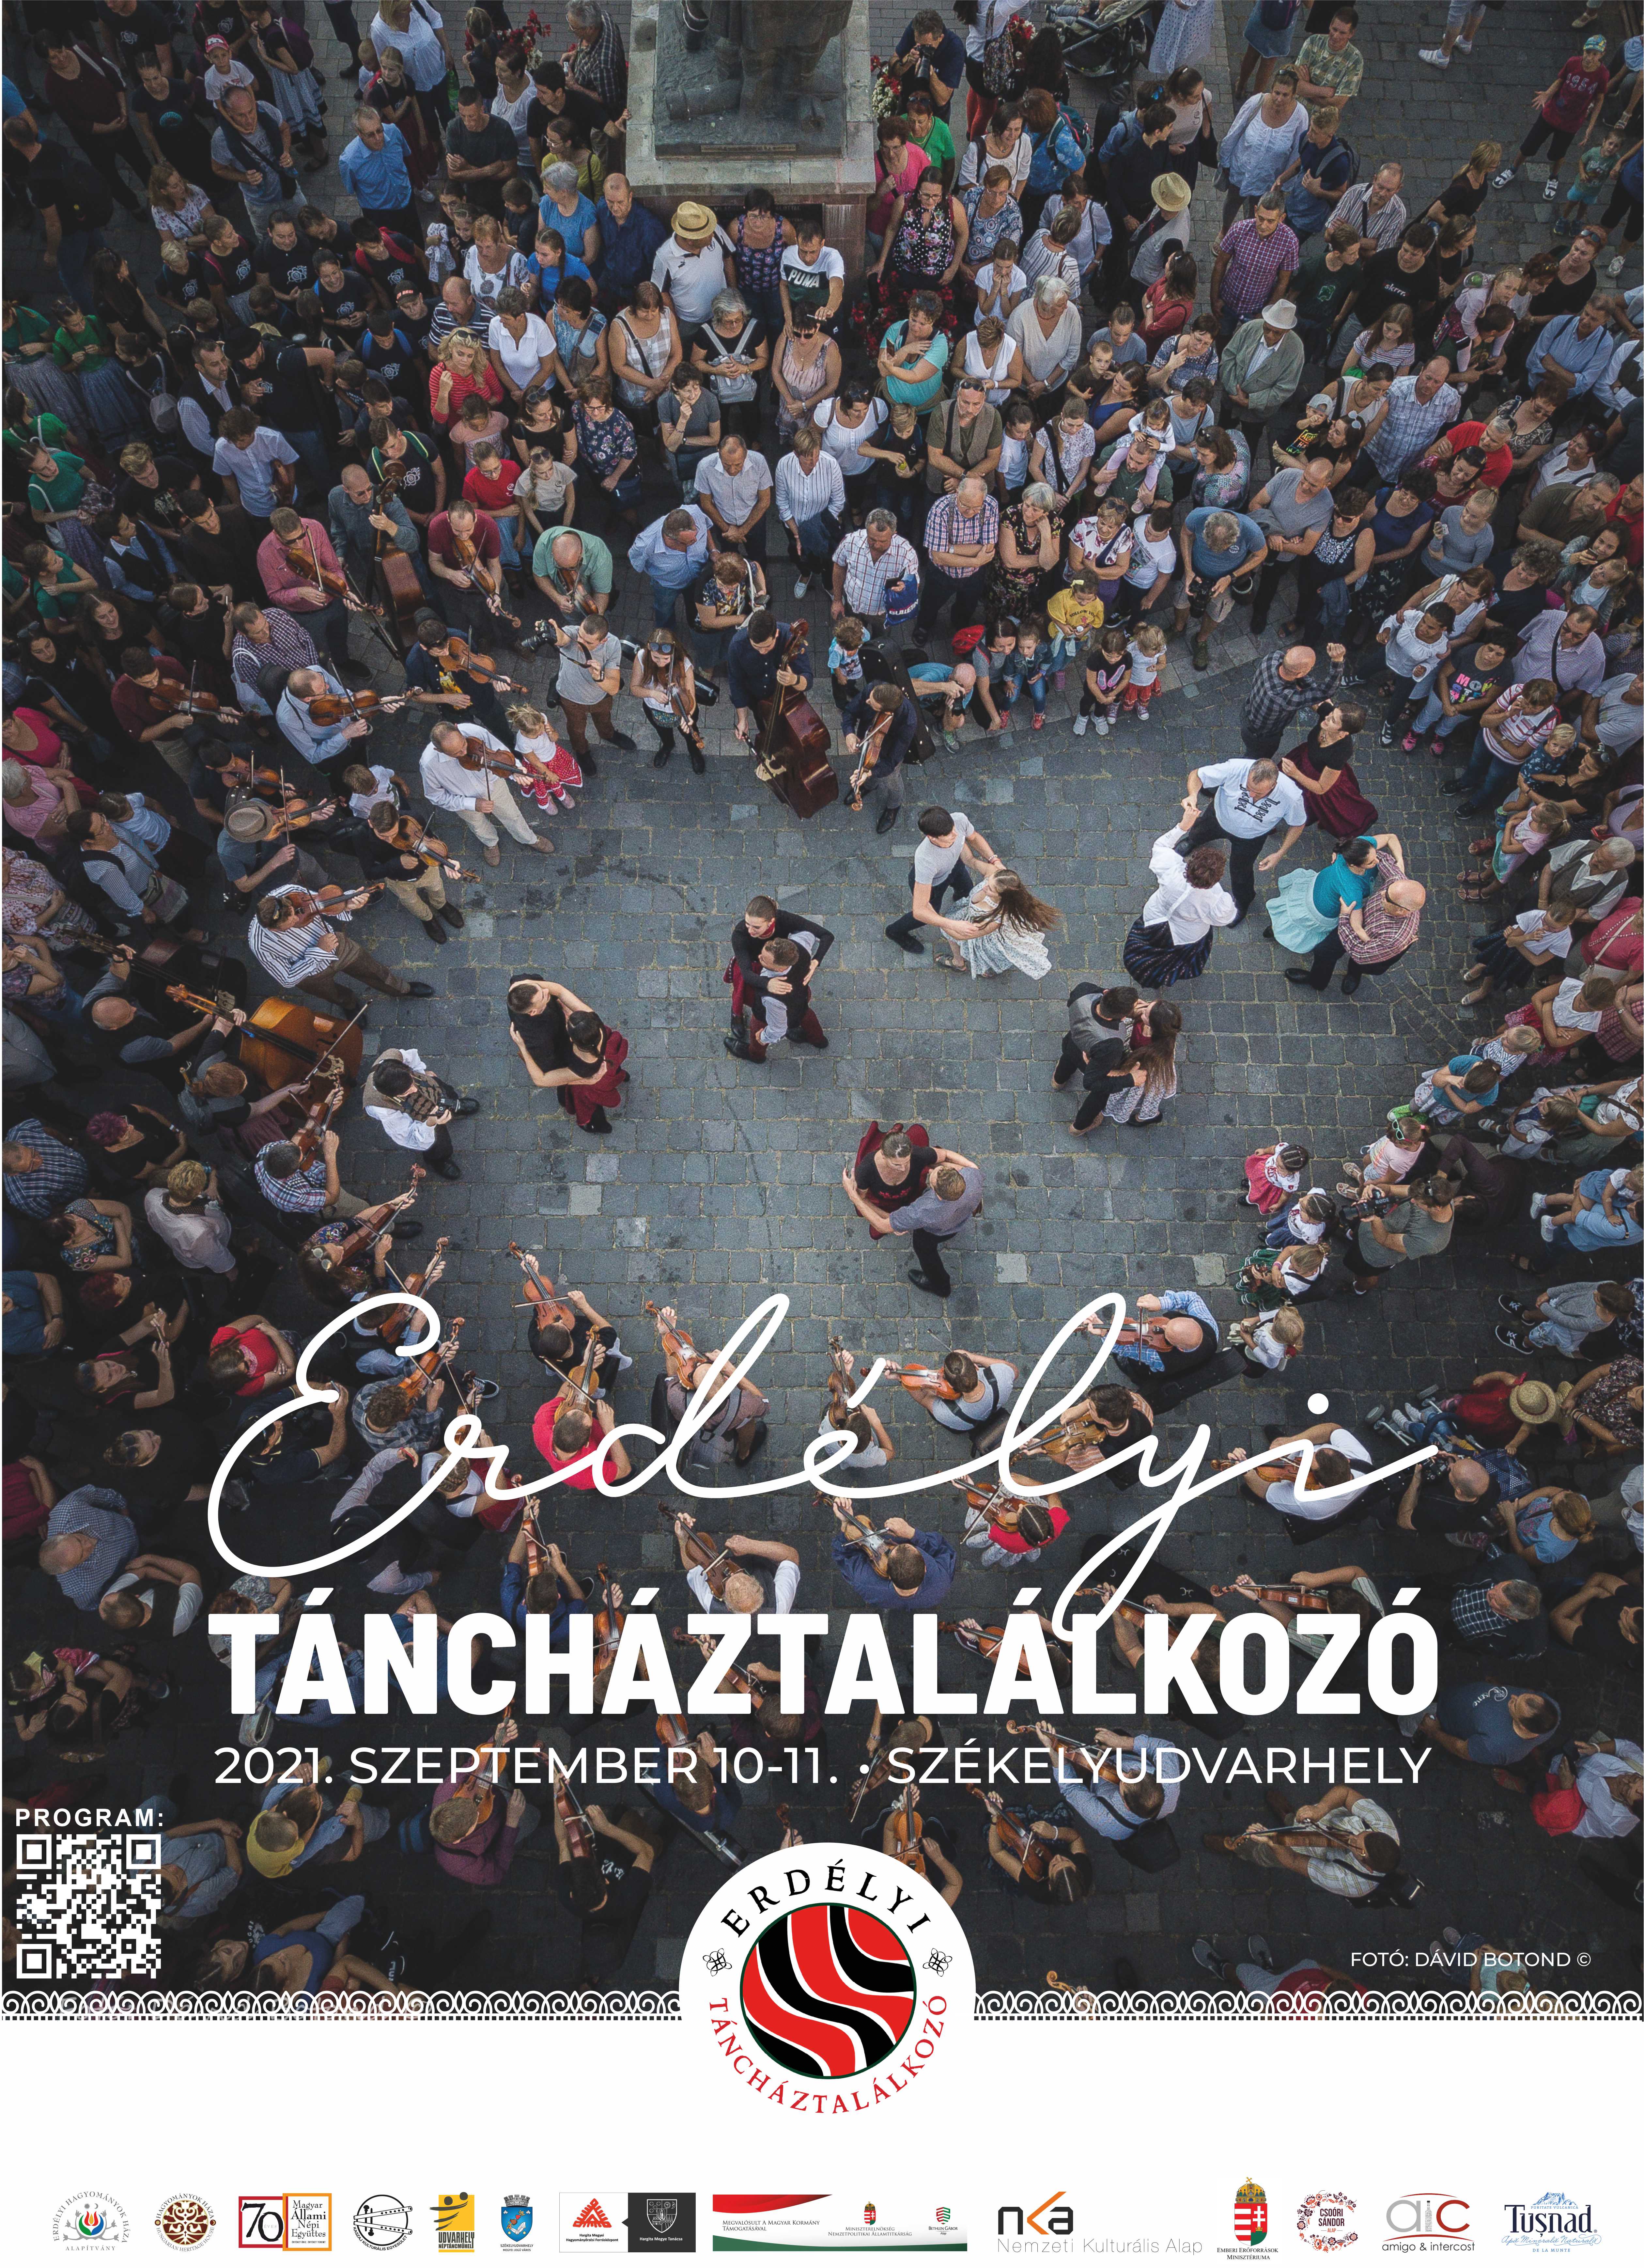 Erdelyi Tanchaztalalkozo plakat